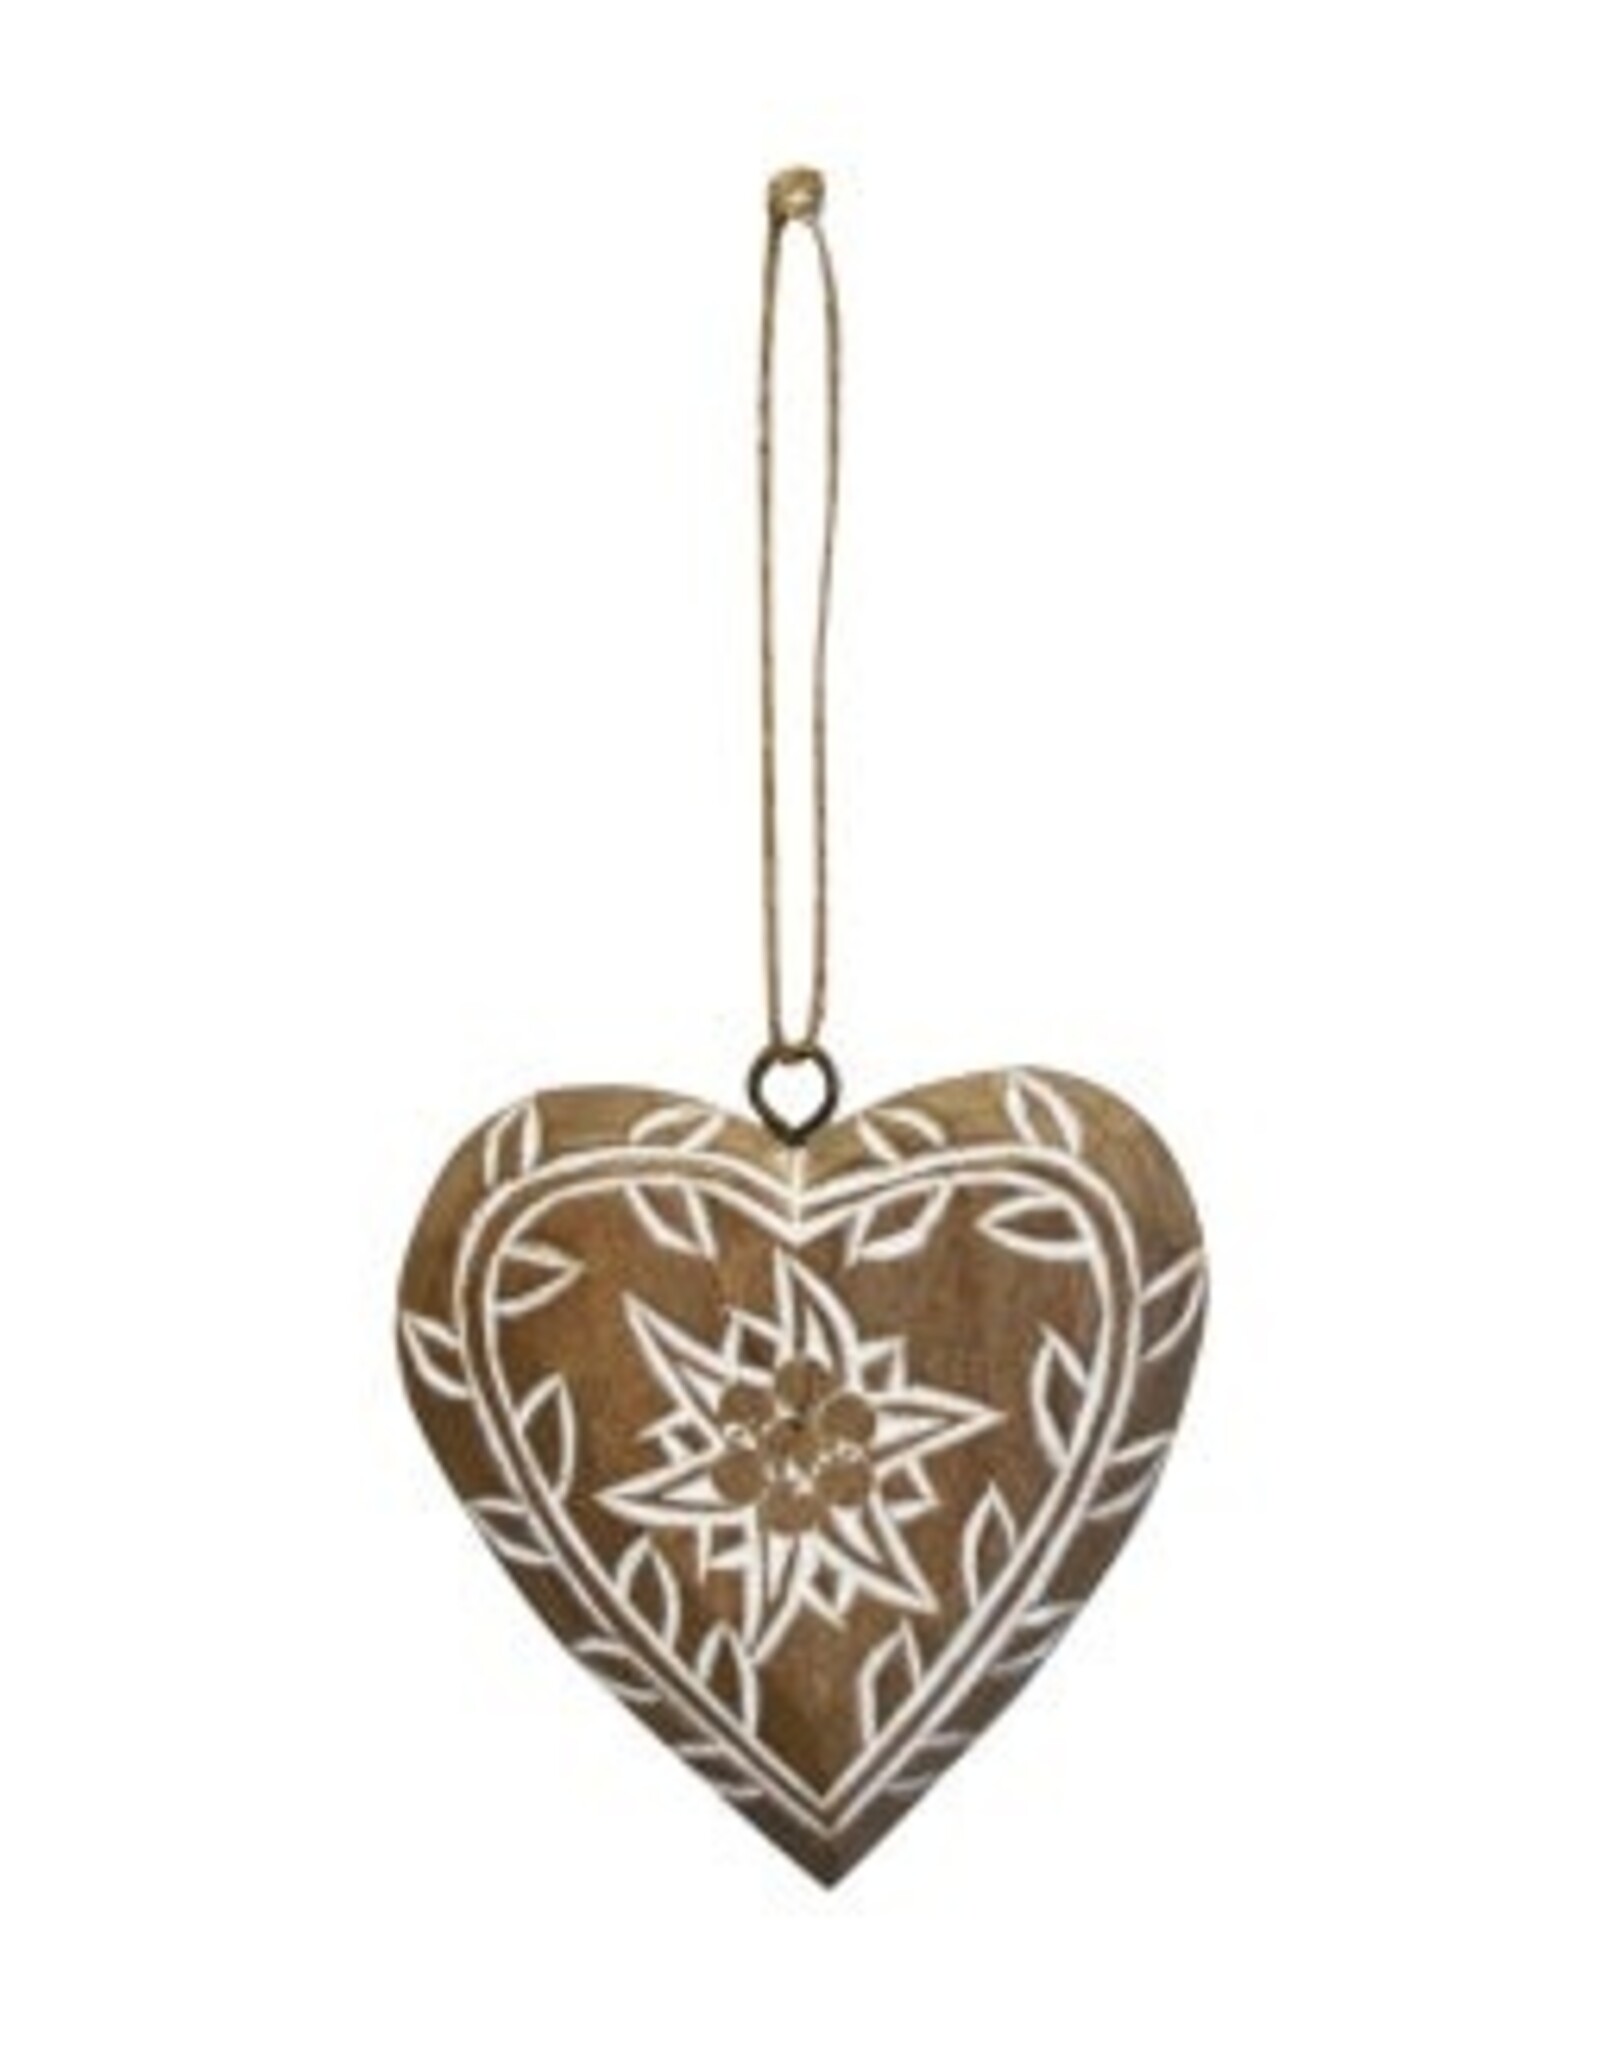 Nostalgia Xmas Nostalgia Ornament Heart Thistle 7.5cm 657-100